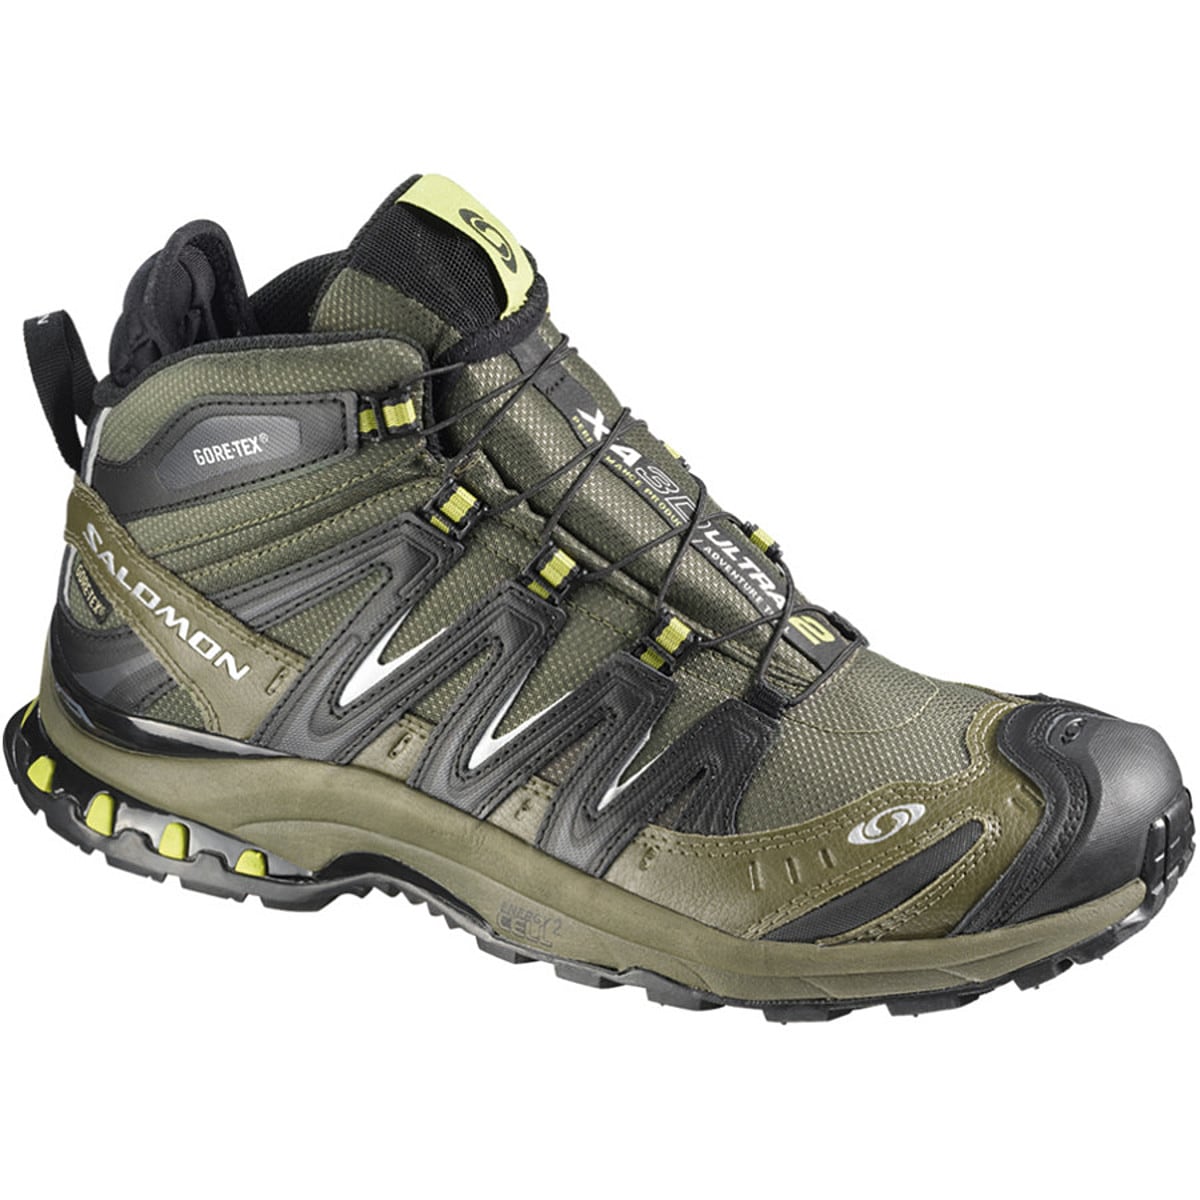 Pro 3D Mid GTX Ultra Trail Running Shoe Men's - Footwear